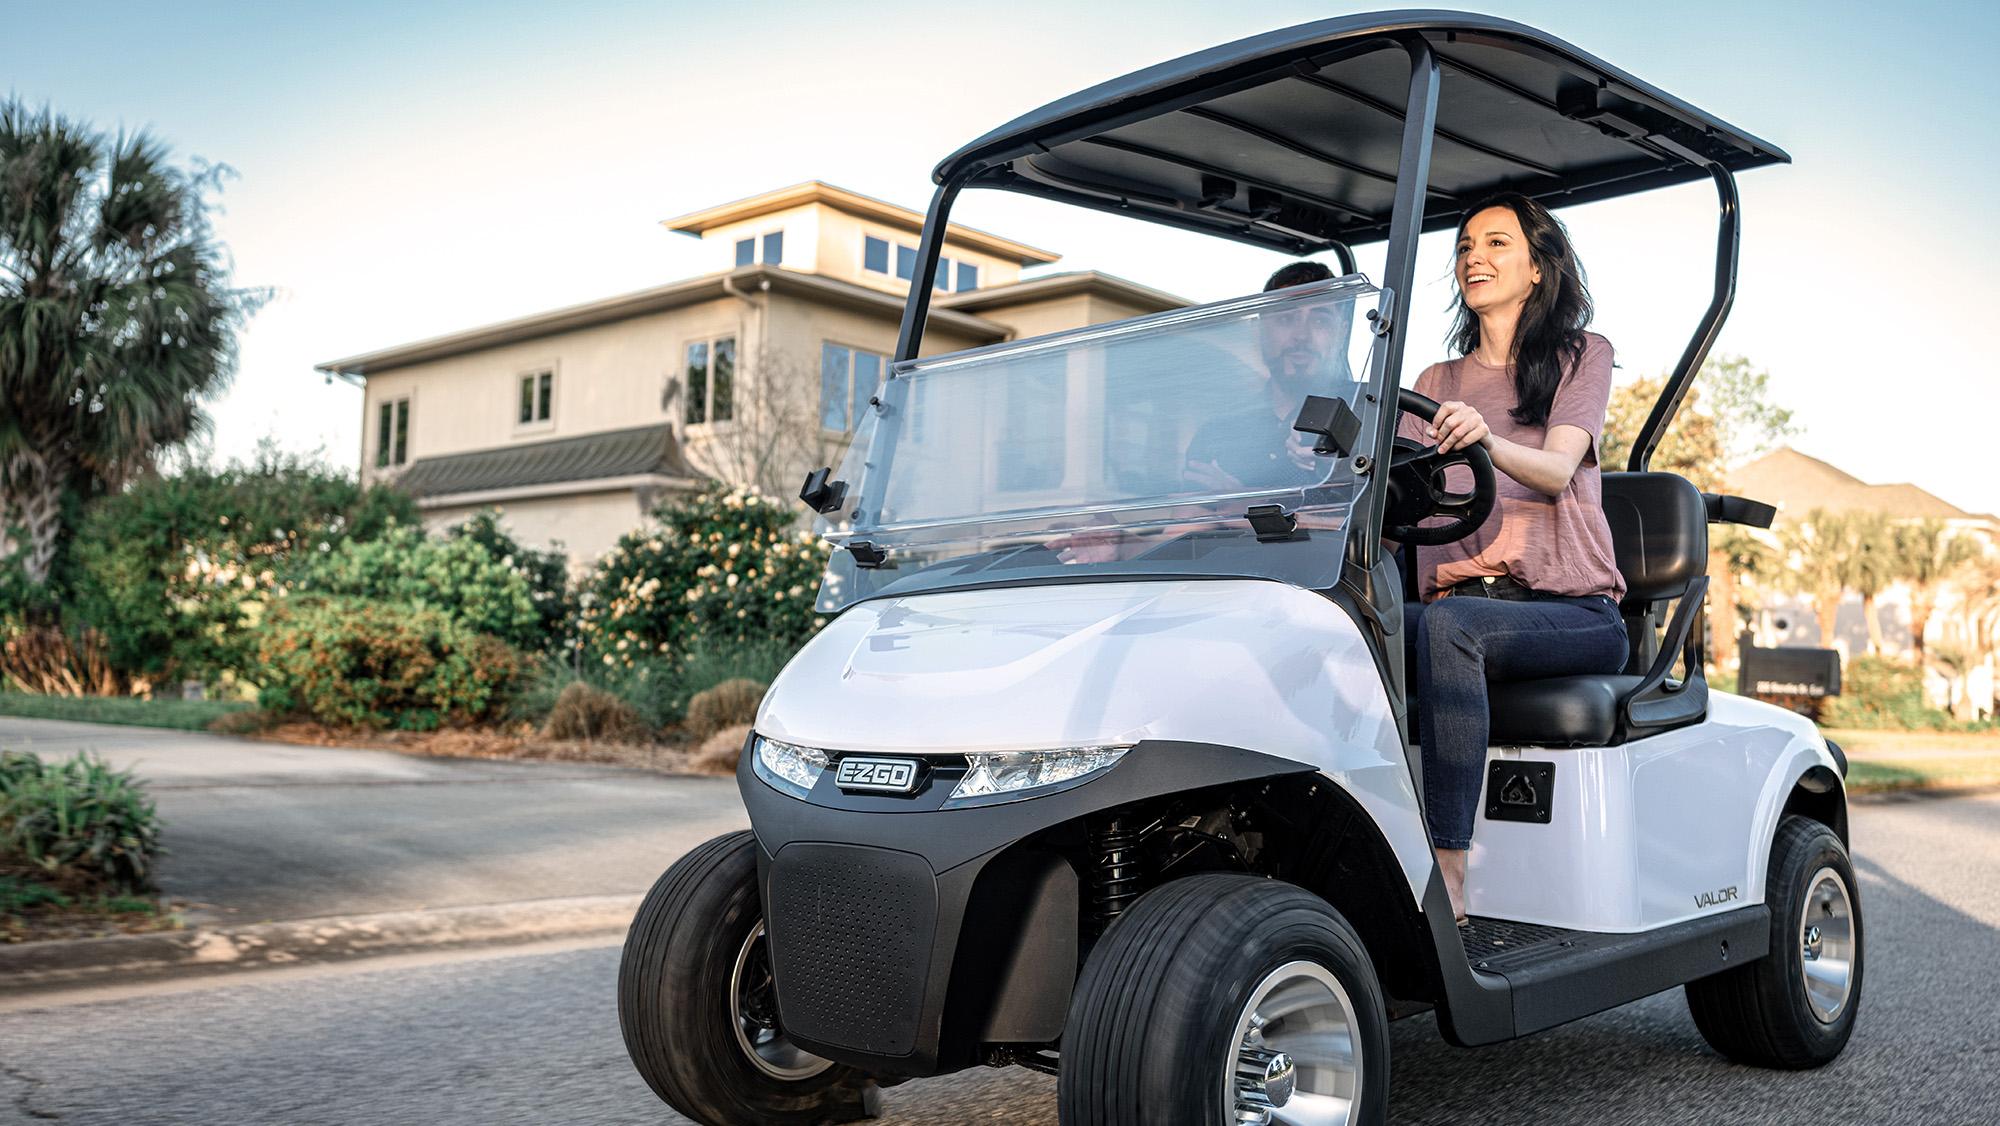 E-Z-GO All-New Valor 2 Passenger or 4 Passenger Golf Cart